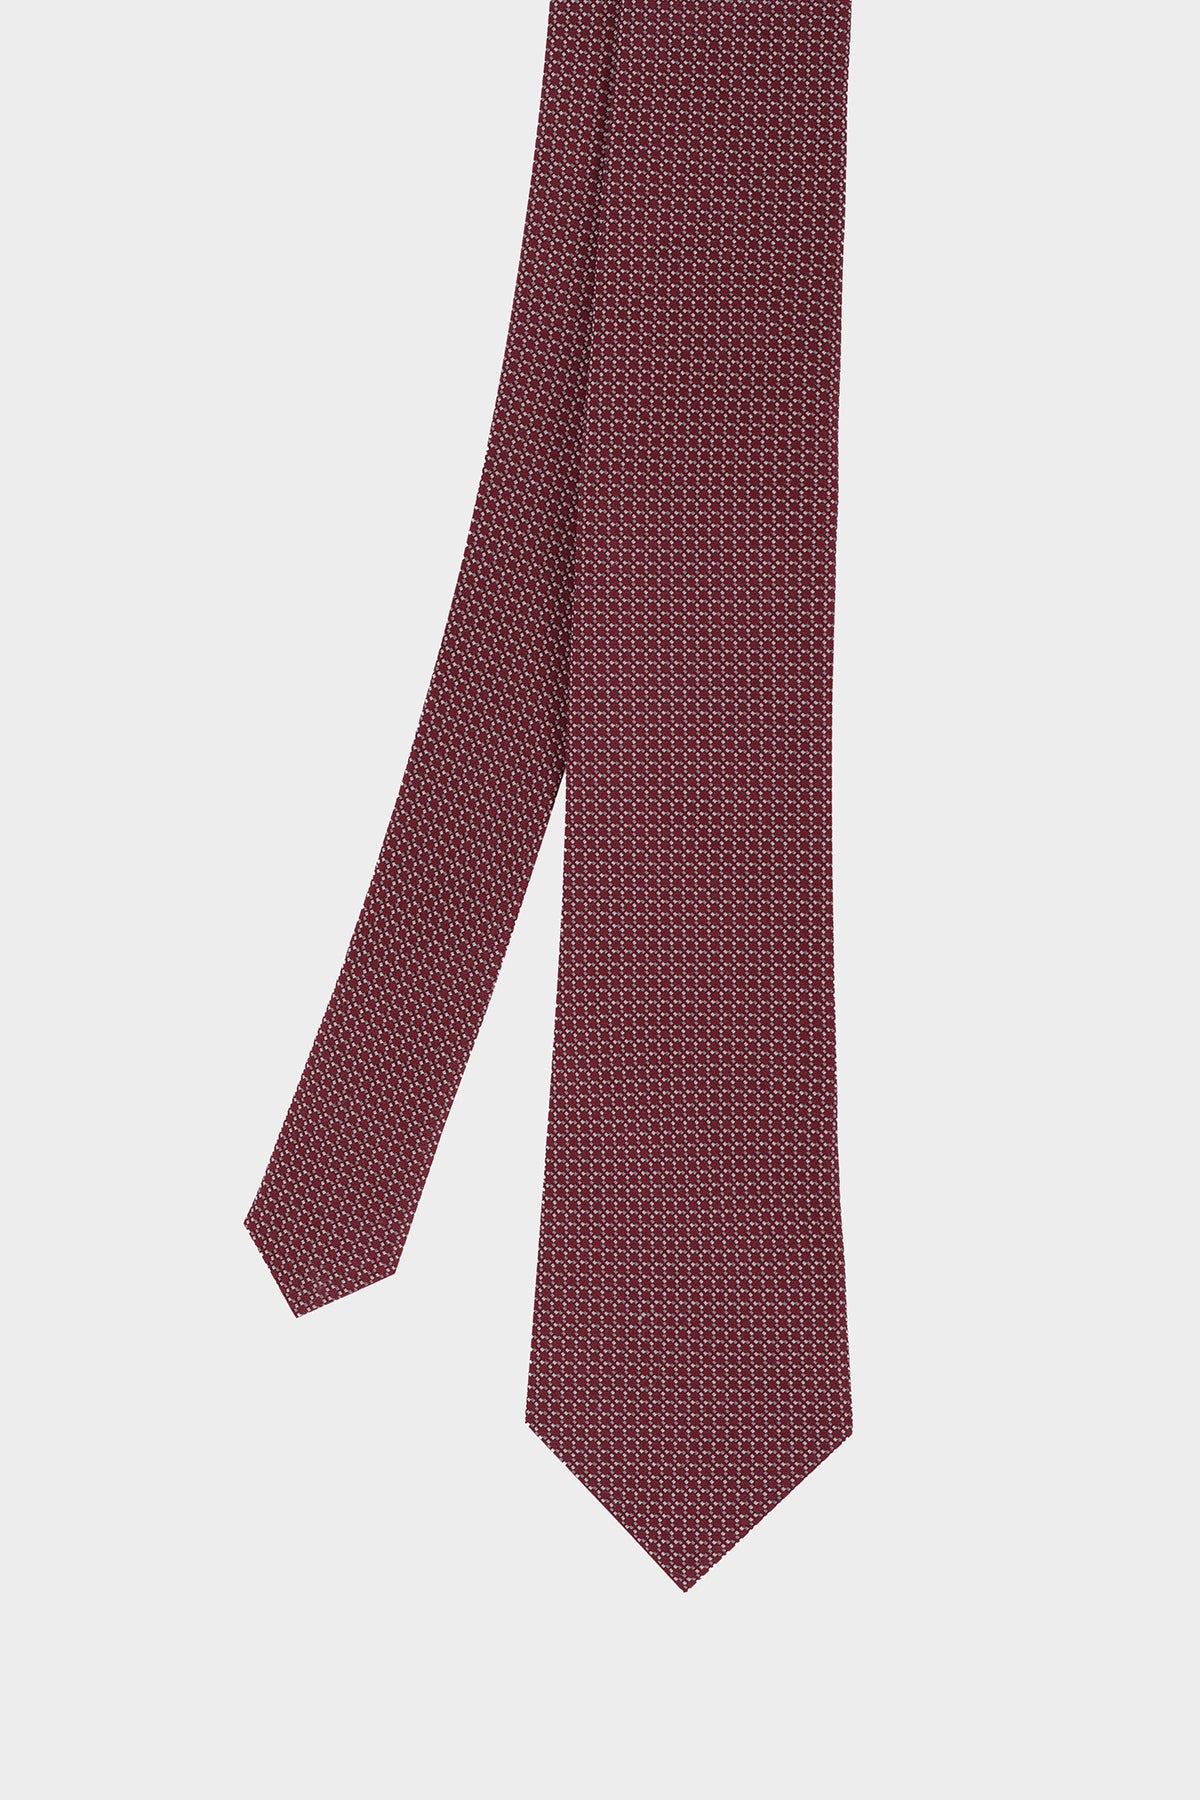 Cravate Octogone Bordeaux